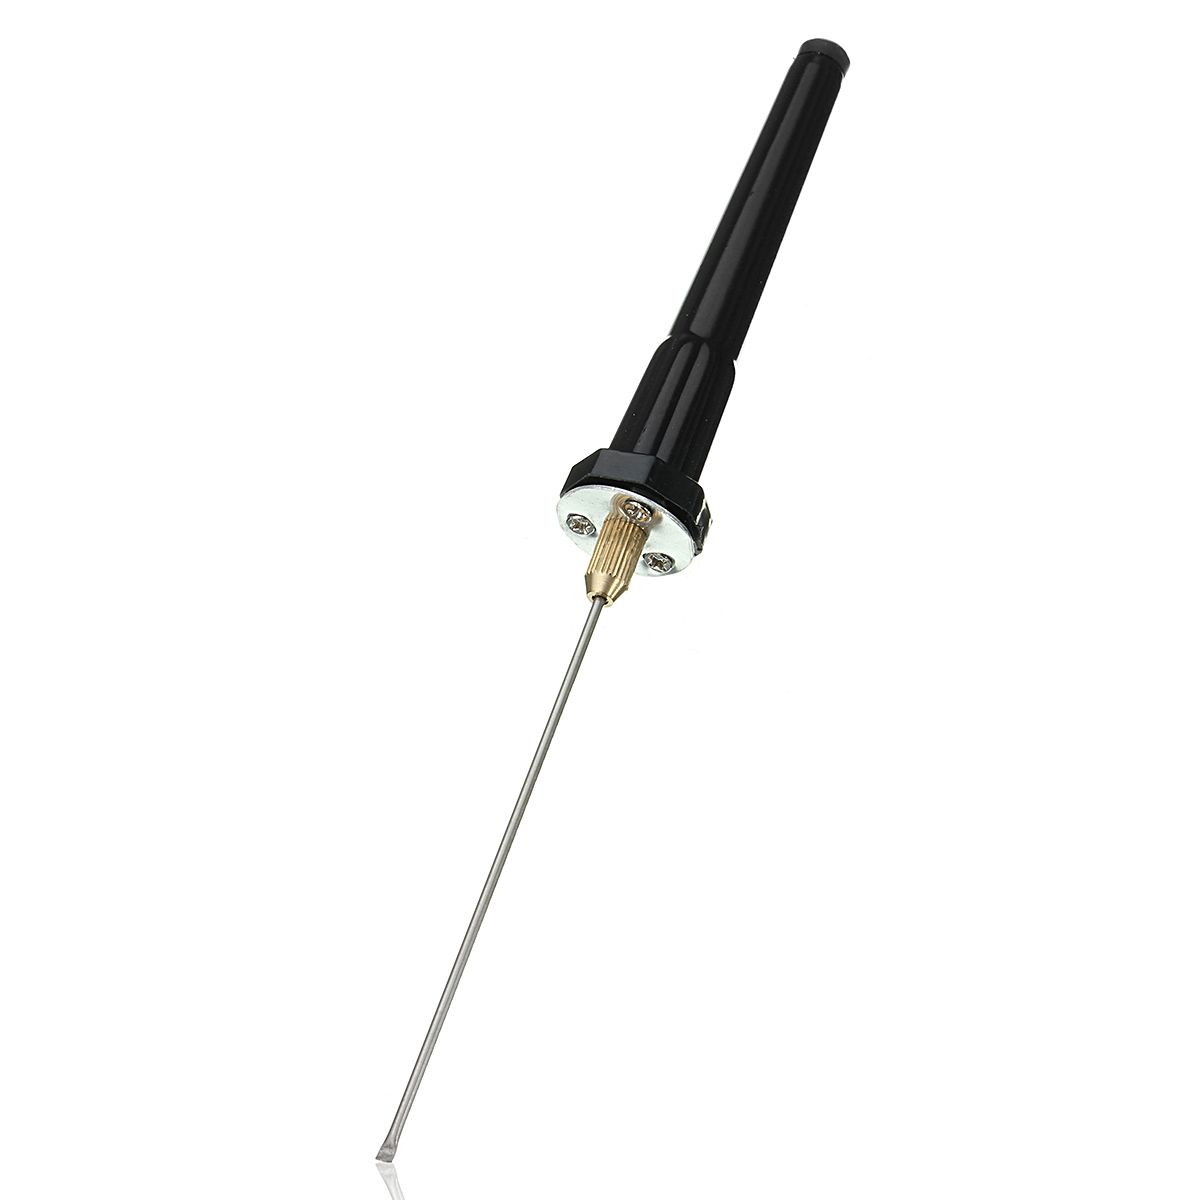 Black-Wire-Foam-Cutter-Cut-for-Styrofoam-Polystyrene-Heater-Tube-Hand-Held-Adaptor-Pen-1108654